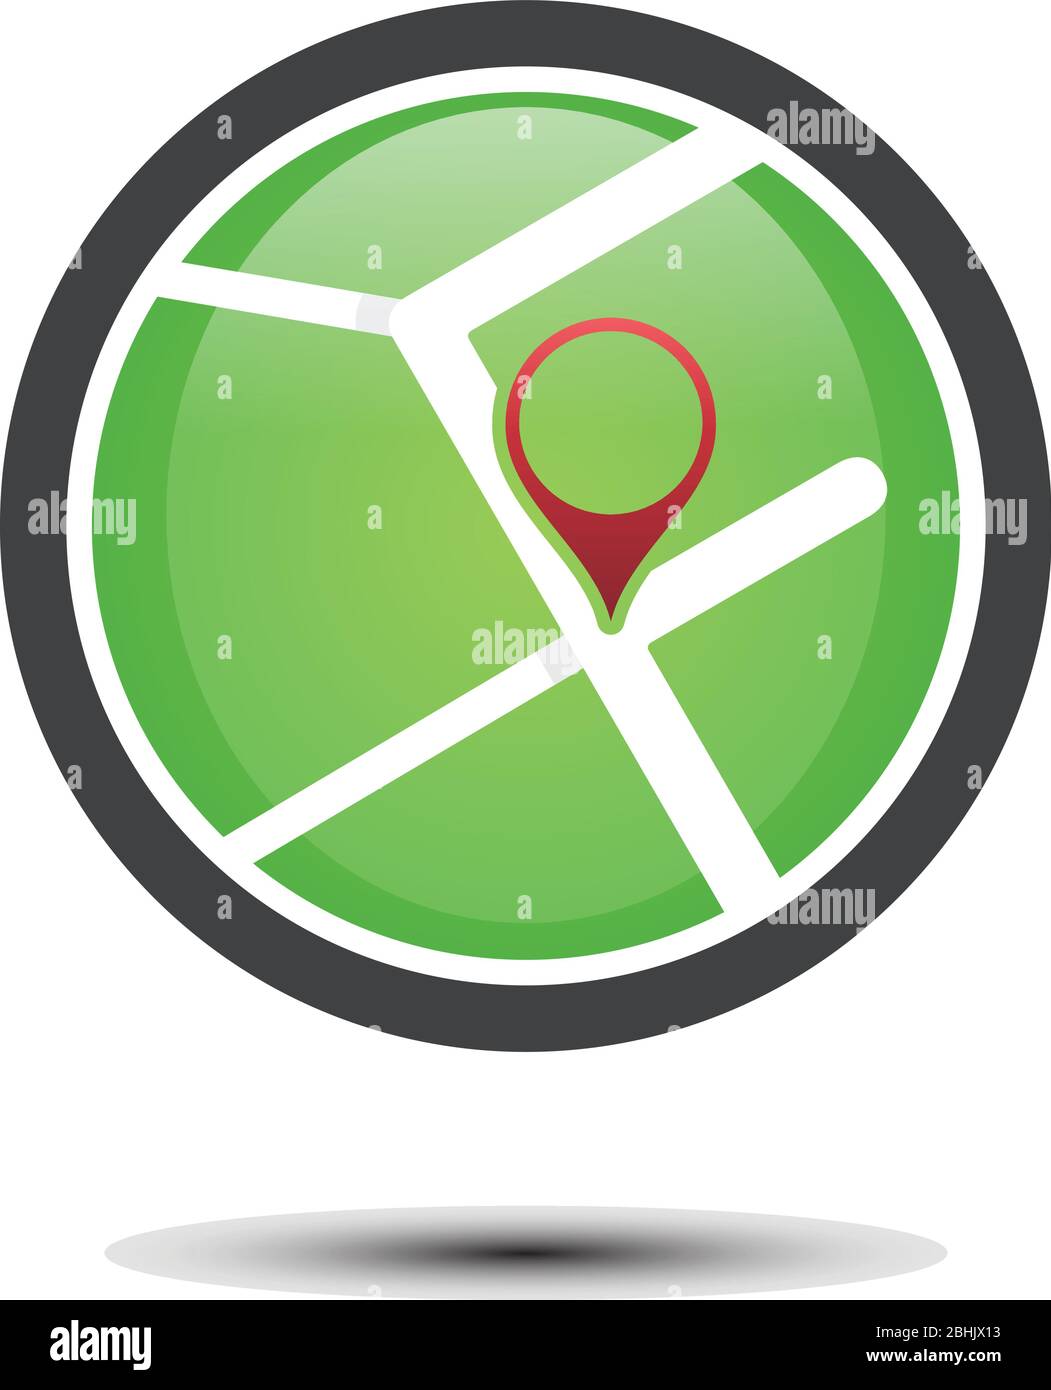 Simbolo semplice della mappa stradale rotonda verde. Icona Street map simbolo moderno e alla moda per grafica e web design. Illustrazione Vettoriale